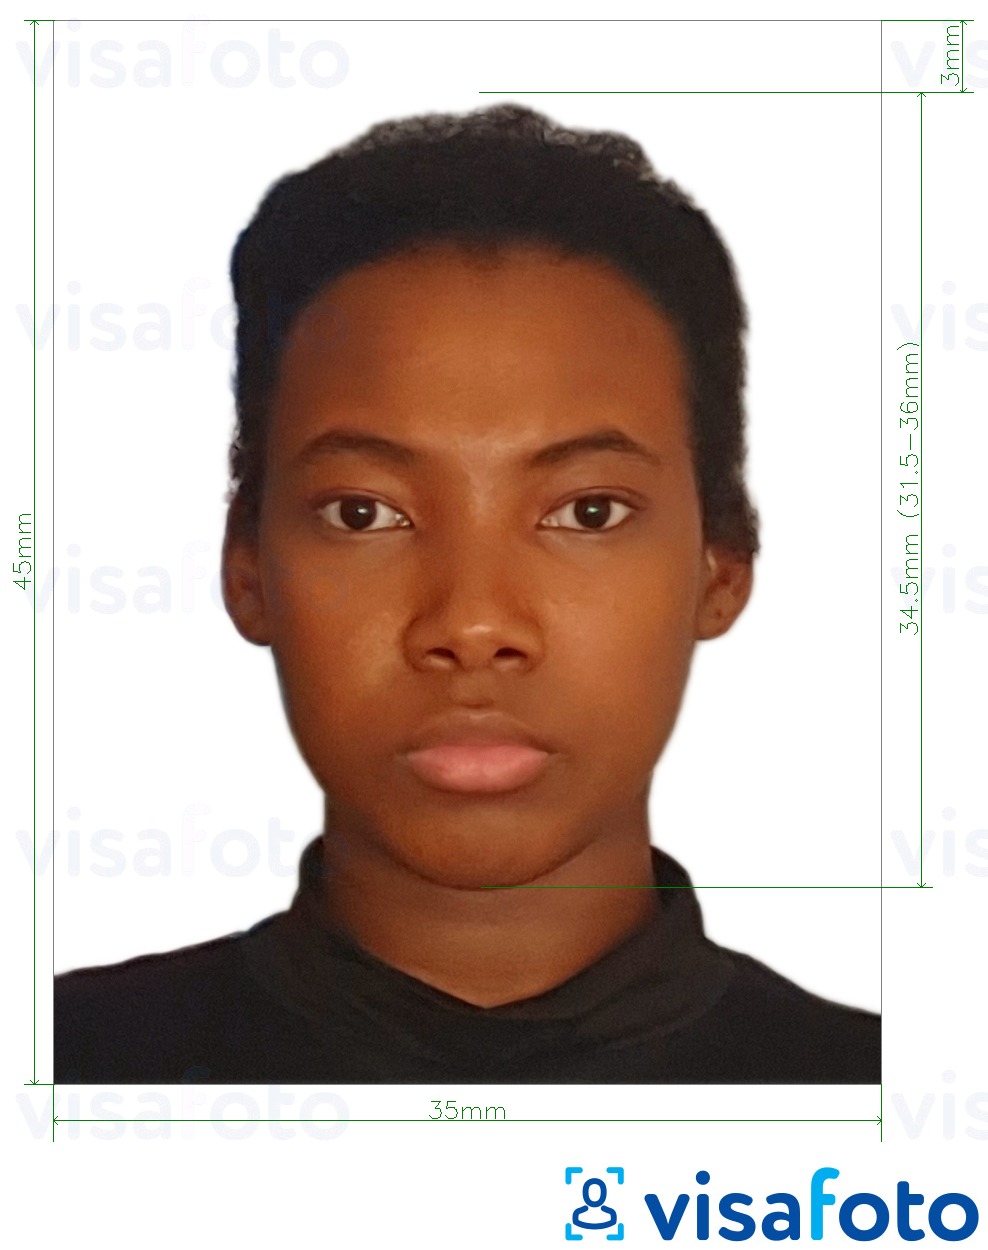 Primjer fotografije za Malavijska putovnica 4,5x3,5 cm (45x35 mm) s točno određenom veličinom